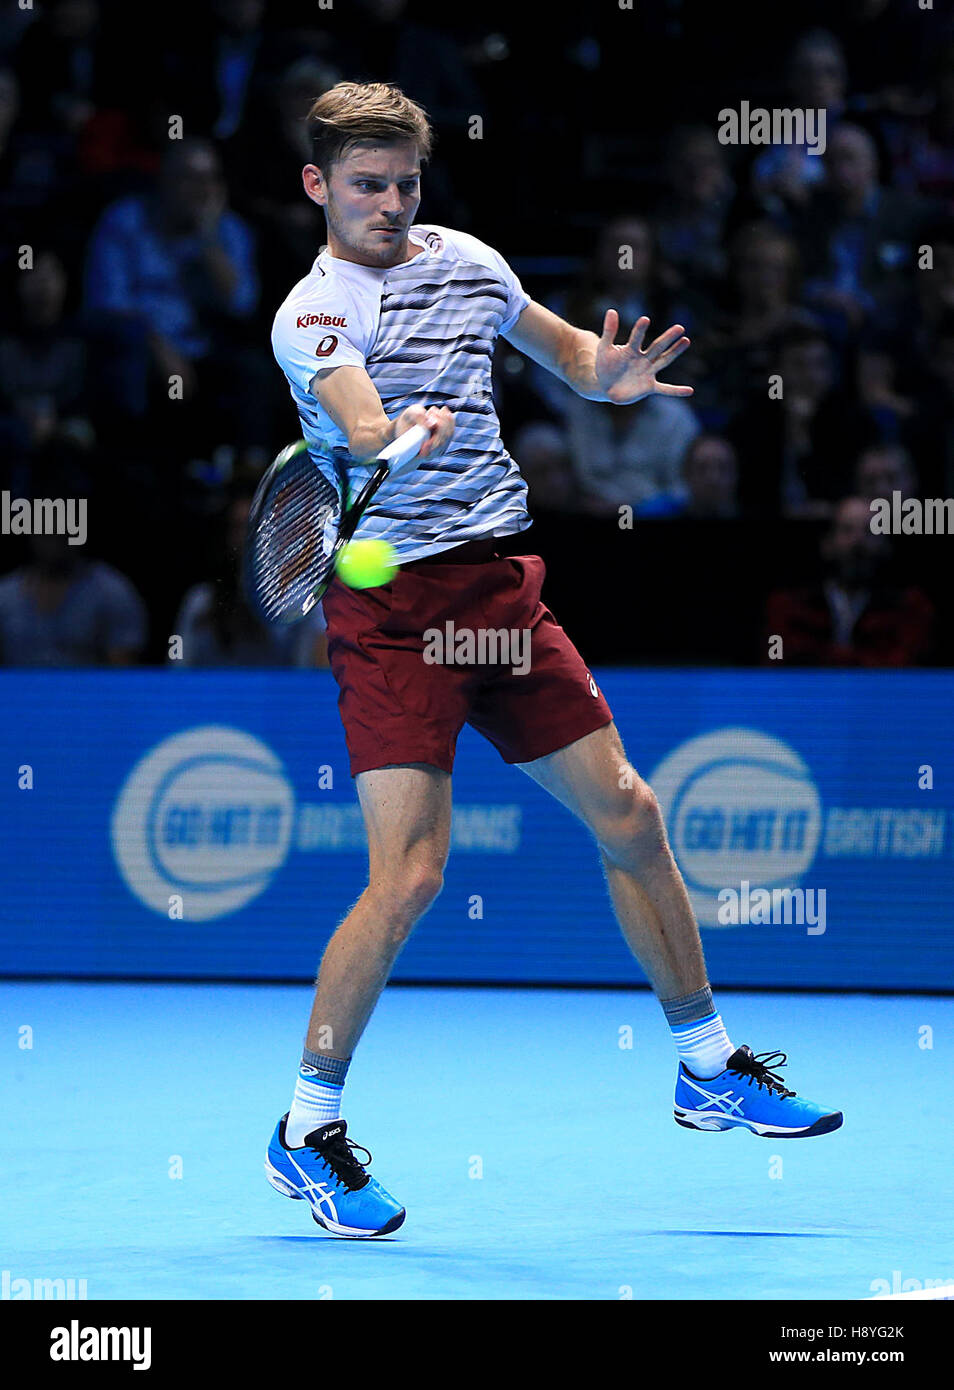 David Goffin in azione contro Novak Djokovic durante il quinto giorno delle finali del Barclays ATP World Tour alla O2 di Londra. PREMERE ASSOCIAZIONE foto. Data immagine: Giovedì 17 novembre 2016. Vedi PA storia TENNIS Londra. Il credito fotografico dovrebbe essere: Jonathan Brady/PA Wire. Foto Stock